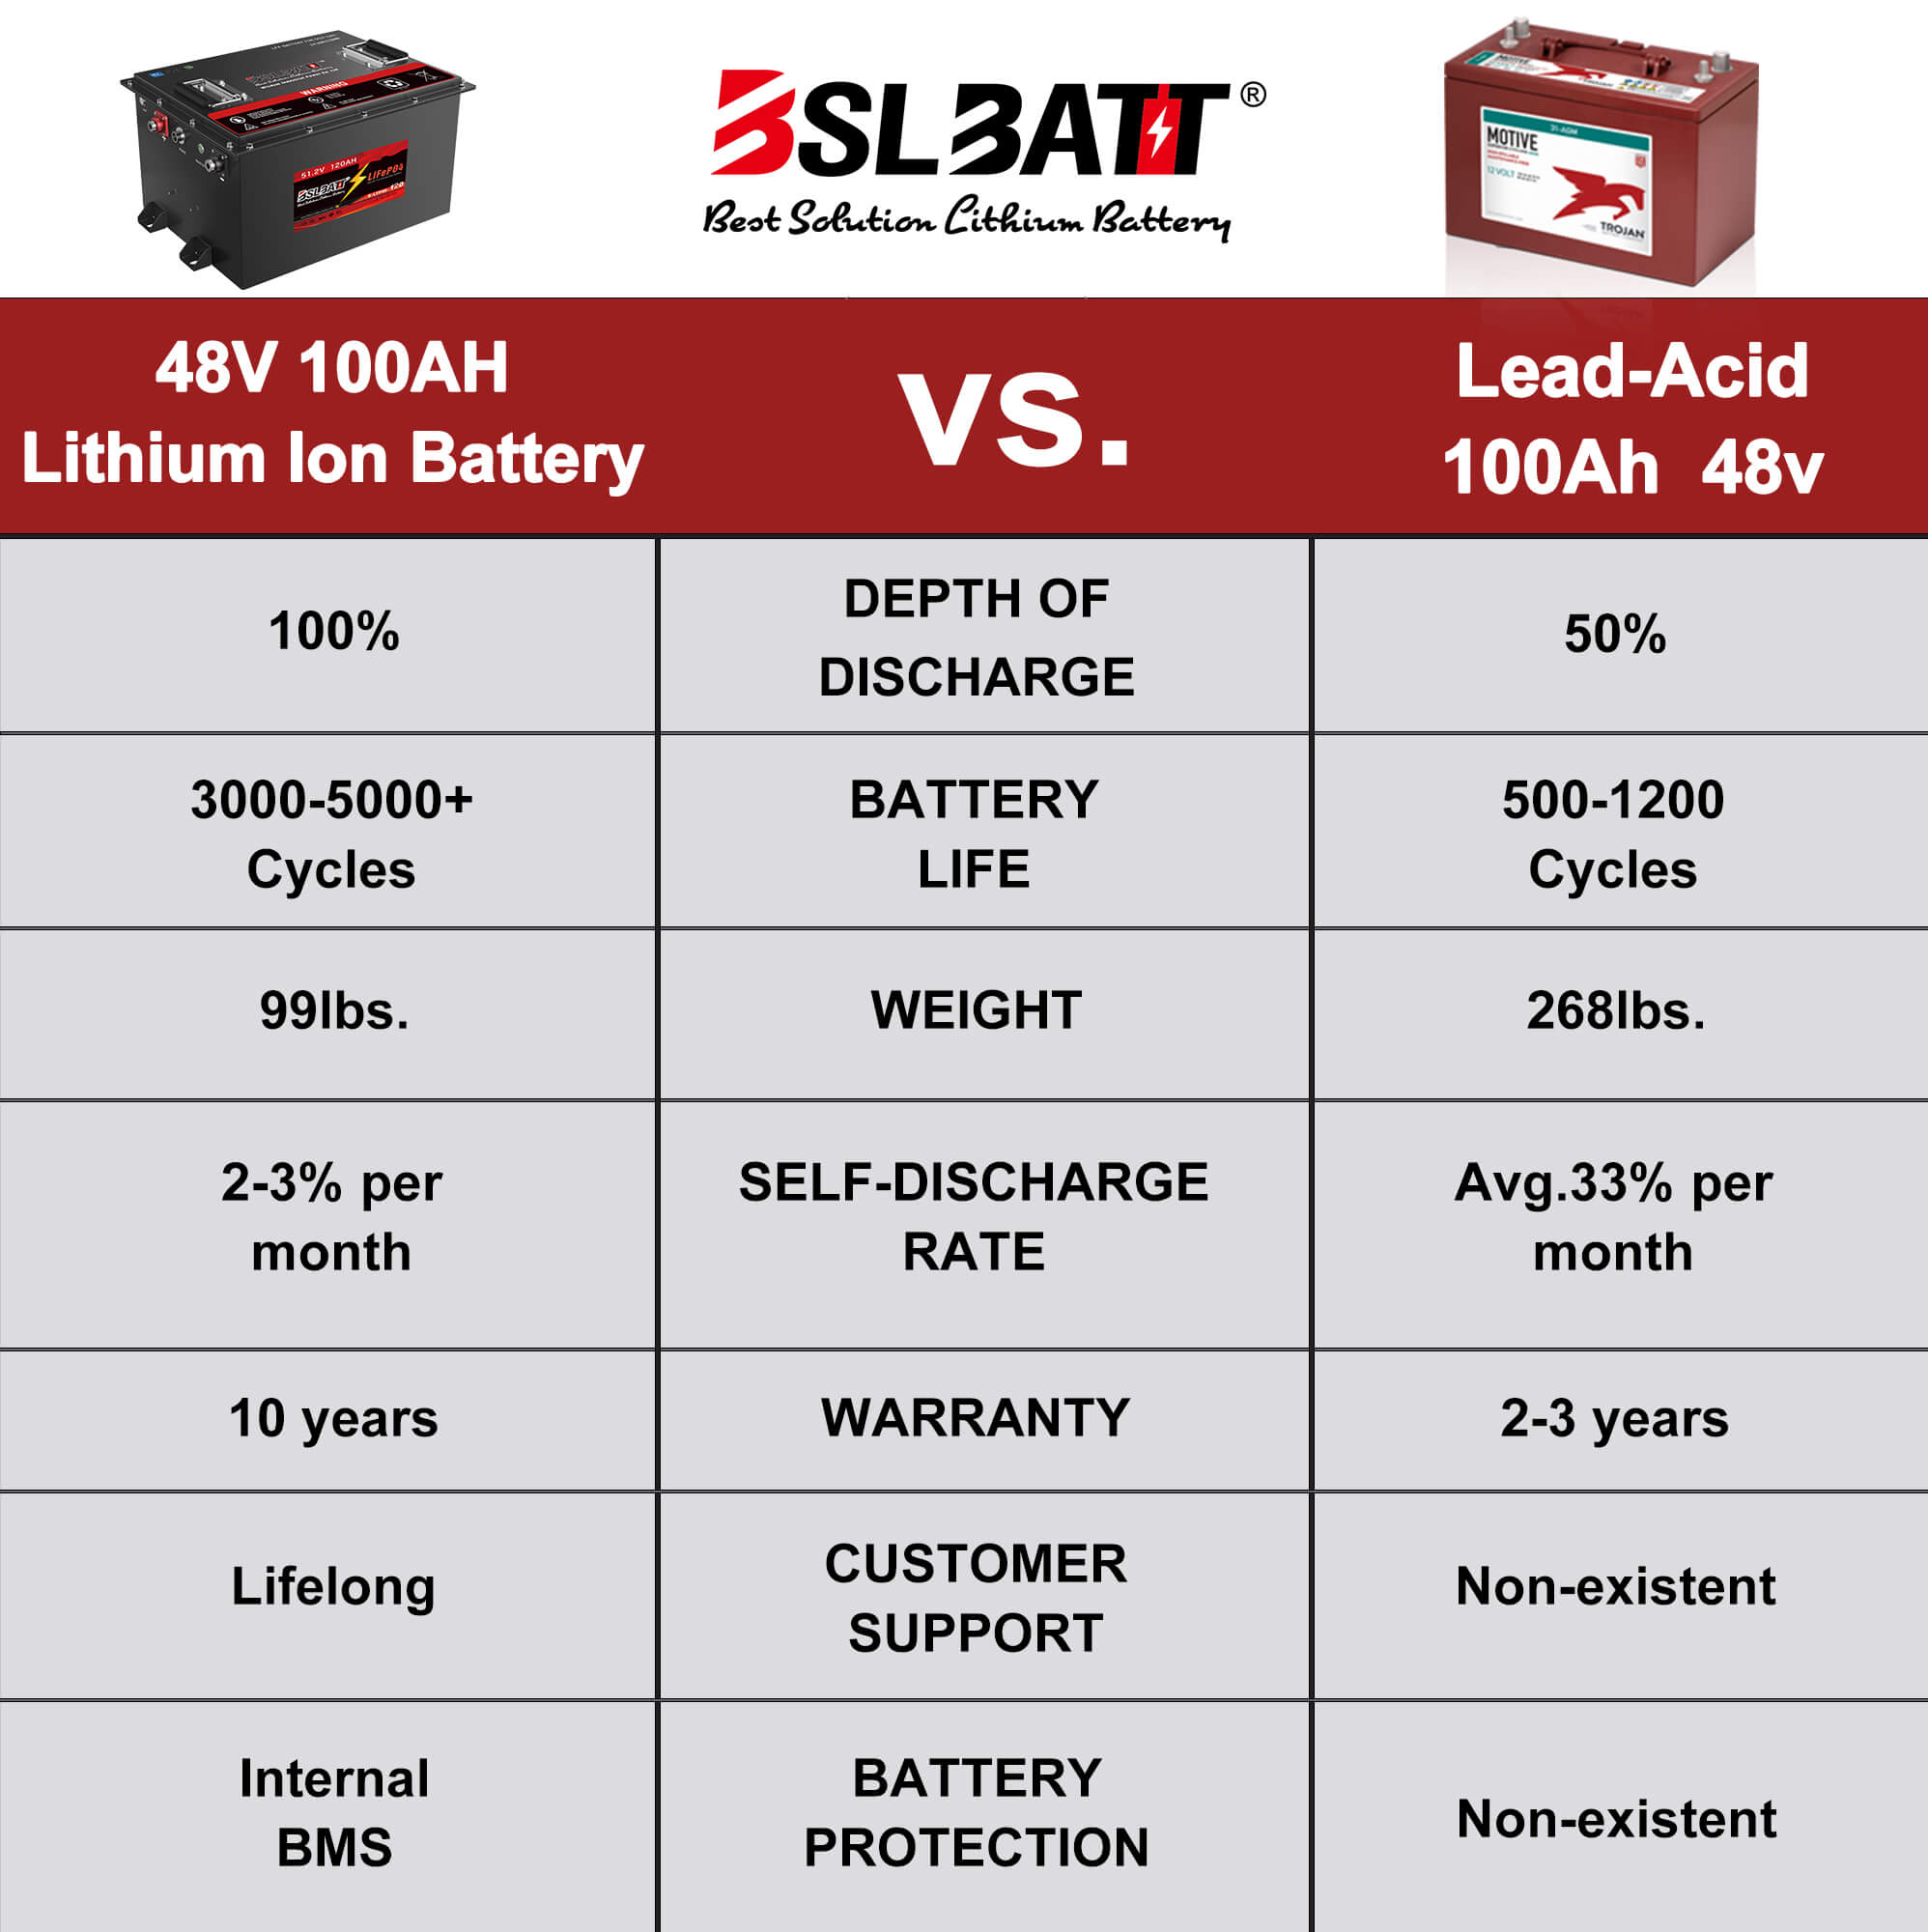 Lead acid VS lithium ion battery